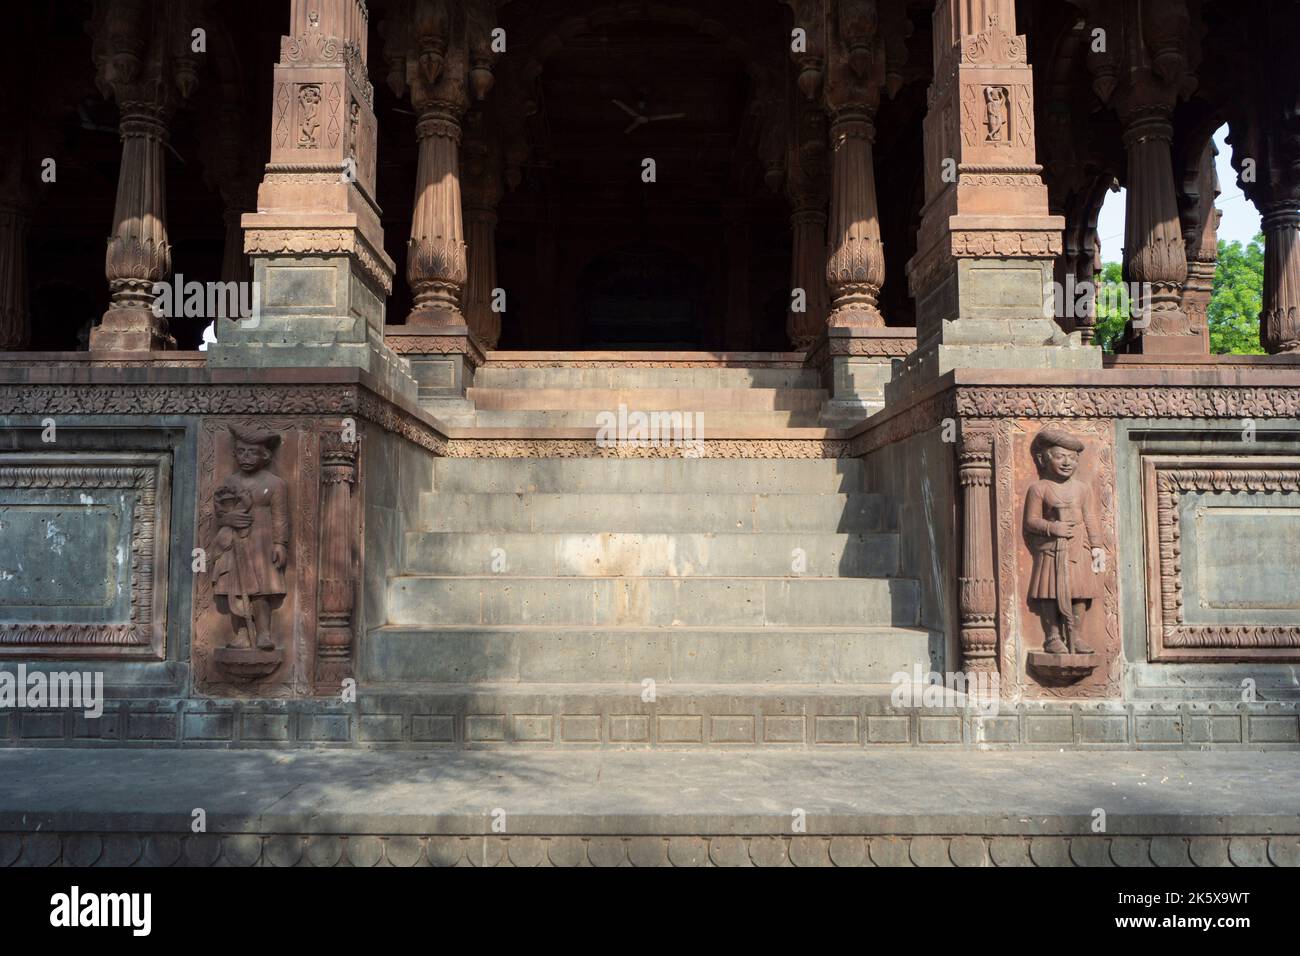 Eingangstreppe willkommen Skulpturen von Krishnapura Chhatri, Indore, Madhya Pradesh. Indische Architektur. Alte Architektur des indischen Tempels. Stockfoto